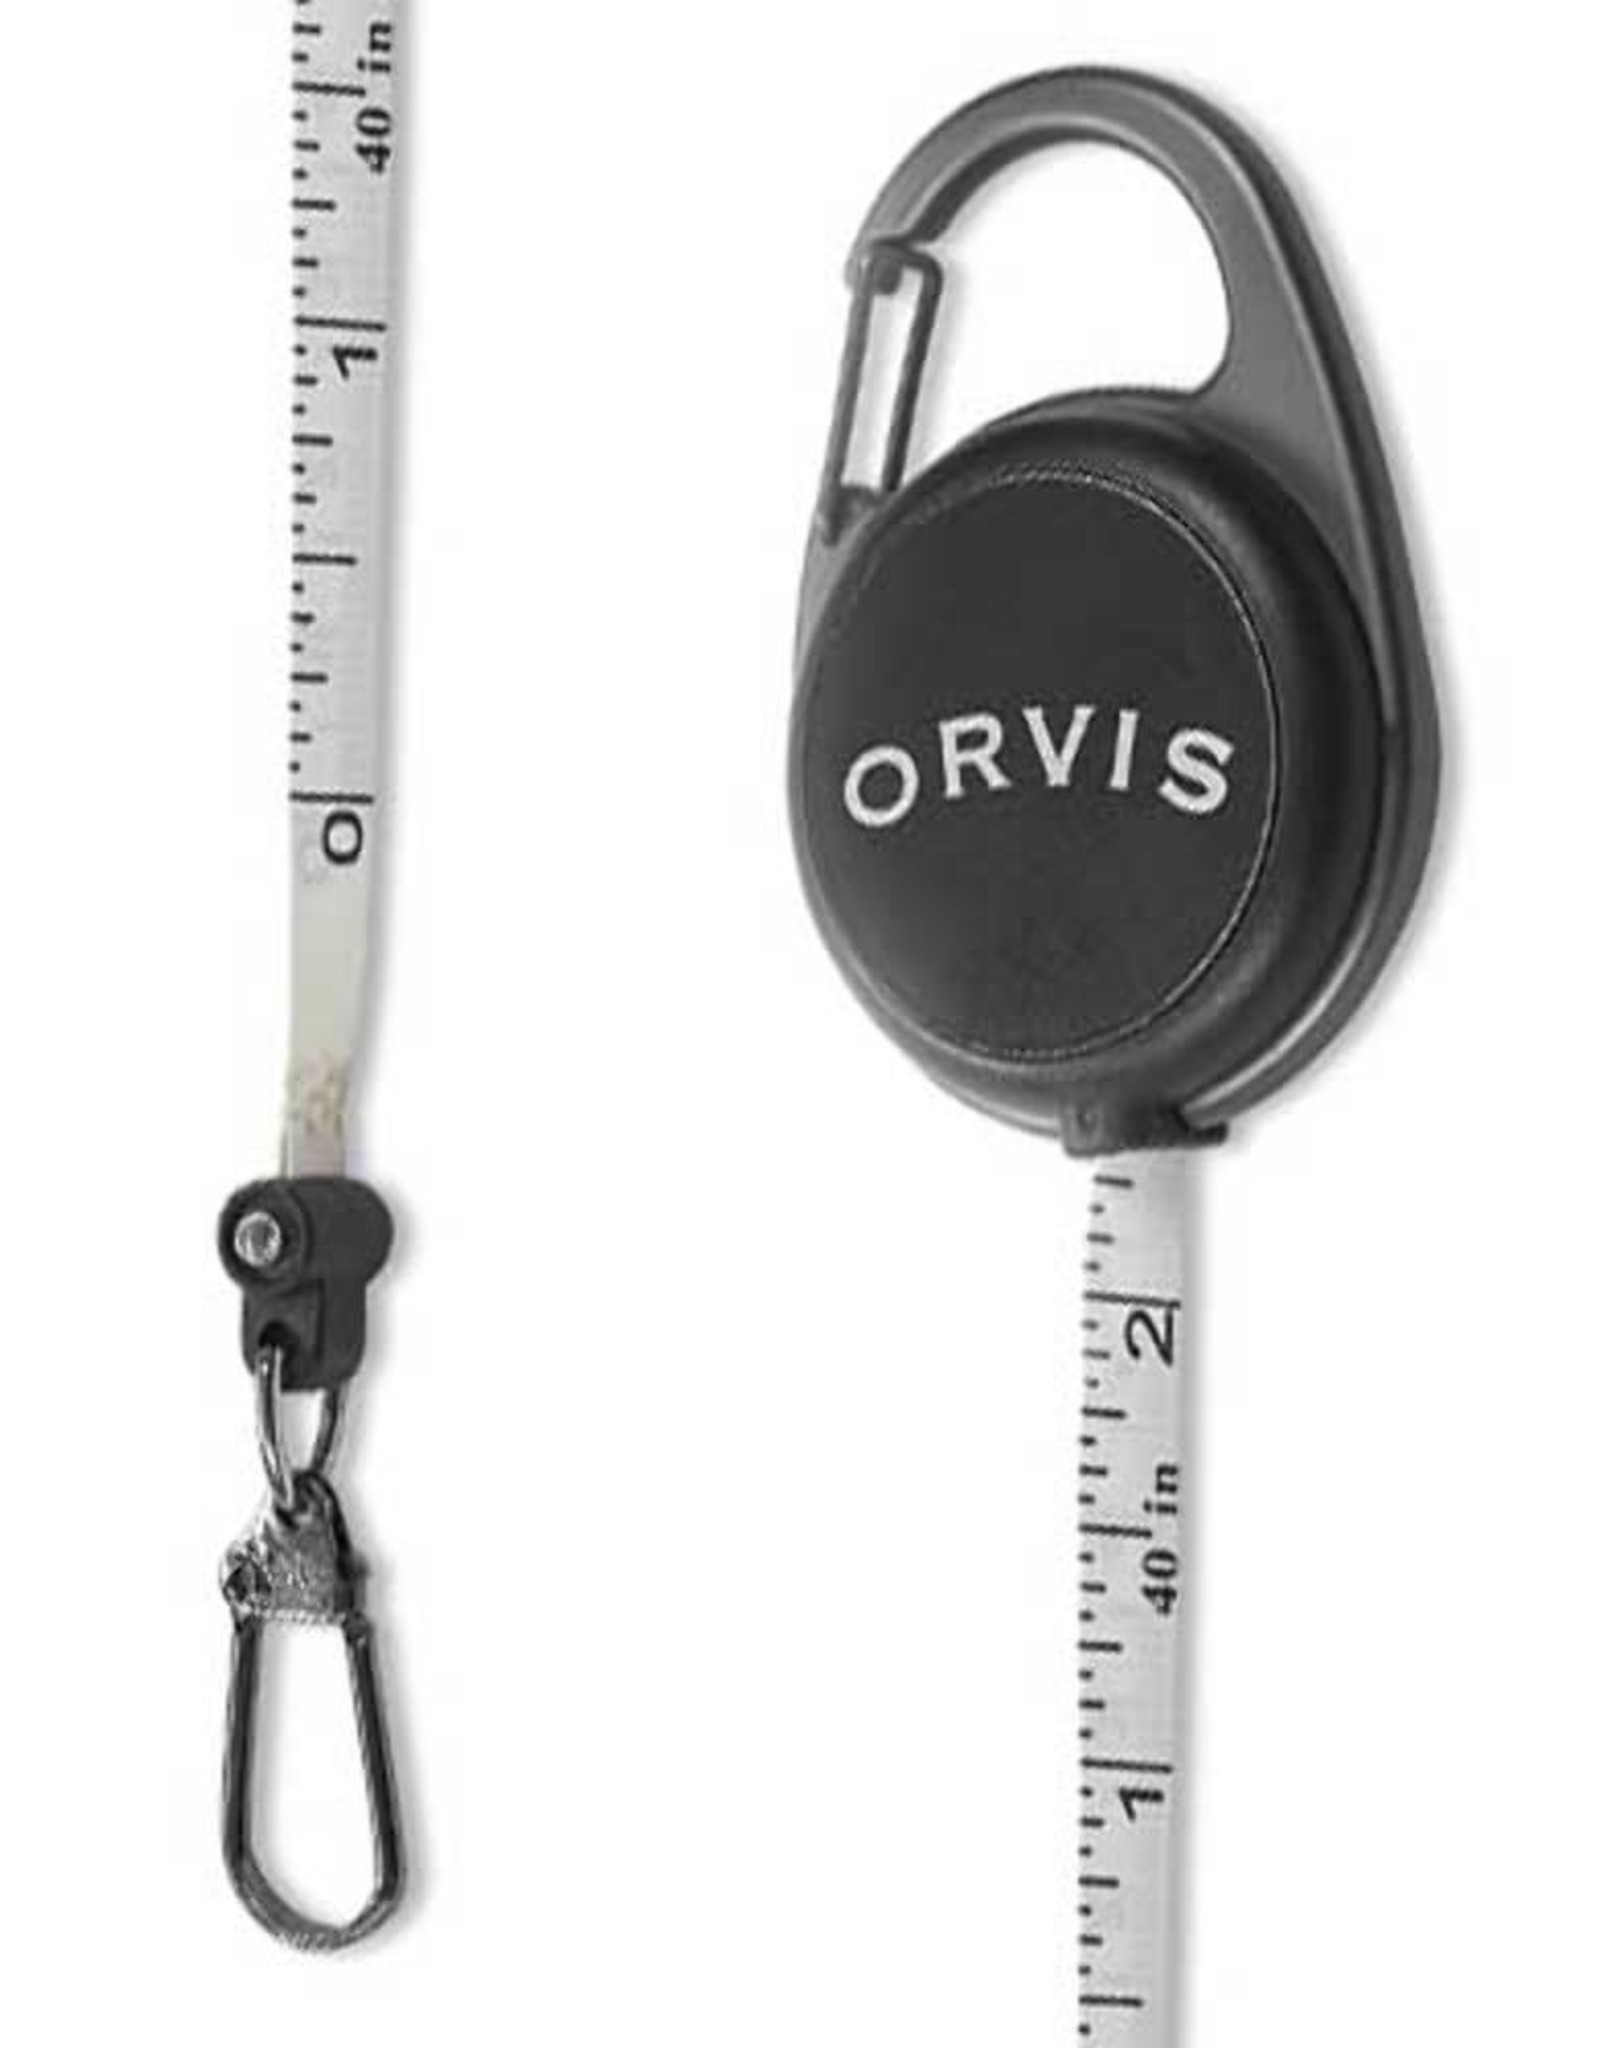 Orvis Carabineer Tape Measure